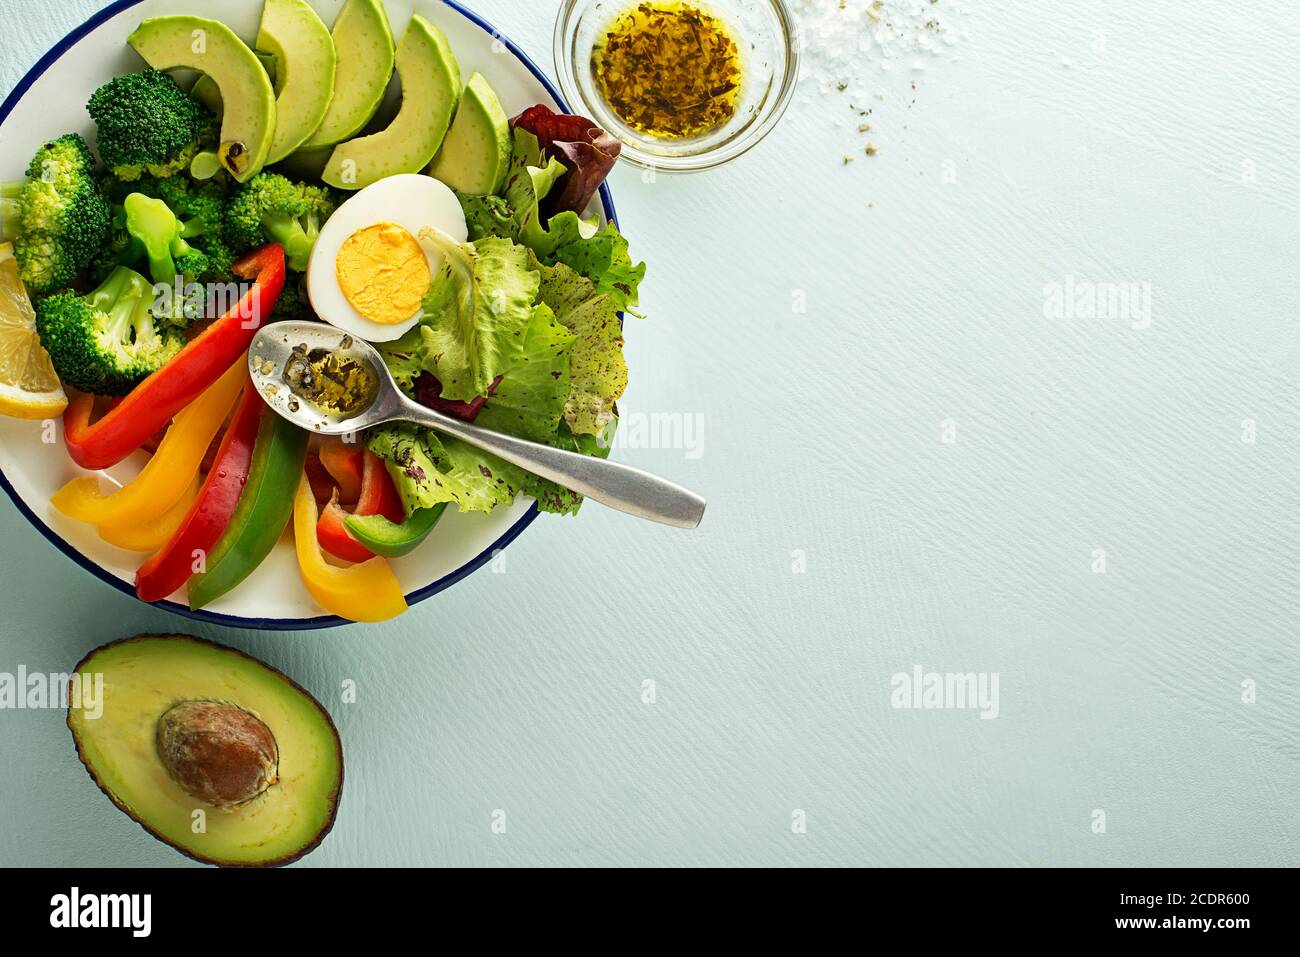 Repas de salade sain avec œufs, avocat et légumes frais mélangés sur fond bleu vue de dessus. Concept de repas sain Banque D'Images